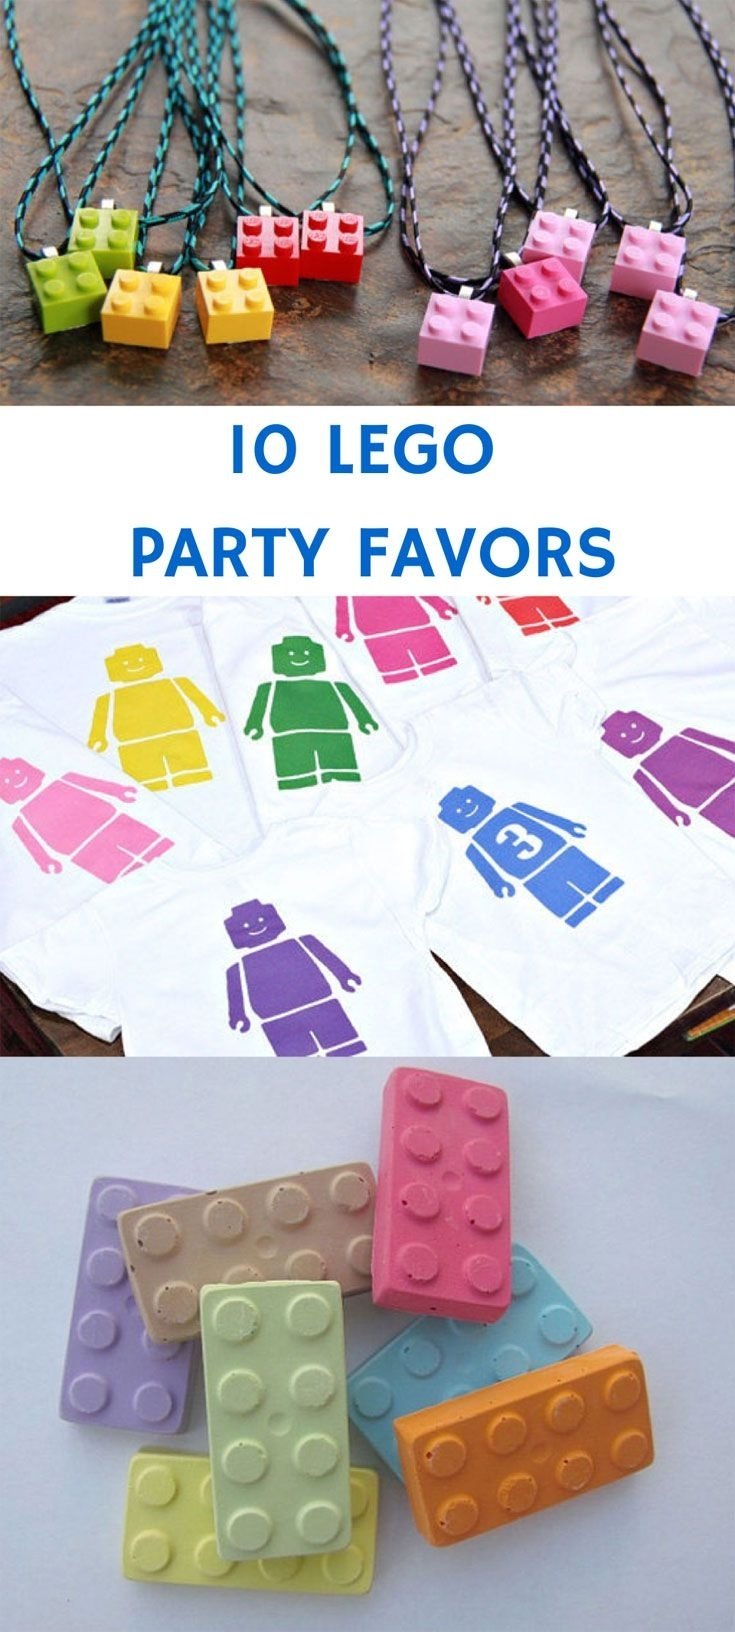 10 Wonderful Party Favor Ideas For Kids 10 lego party favors cadeau fete des meres lego et feta 2022